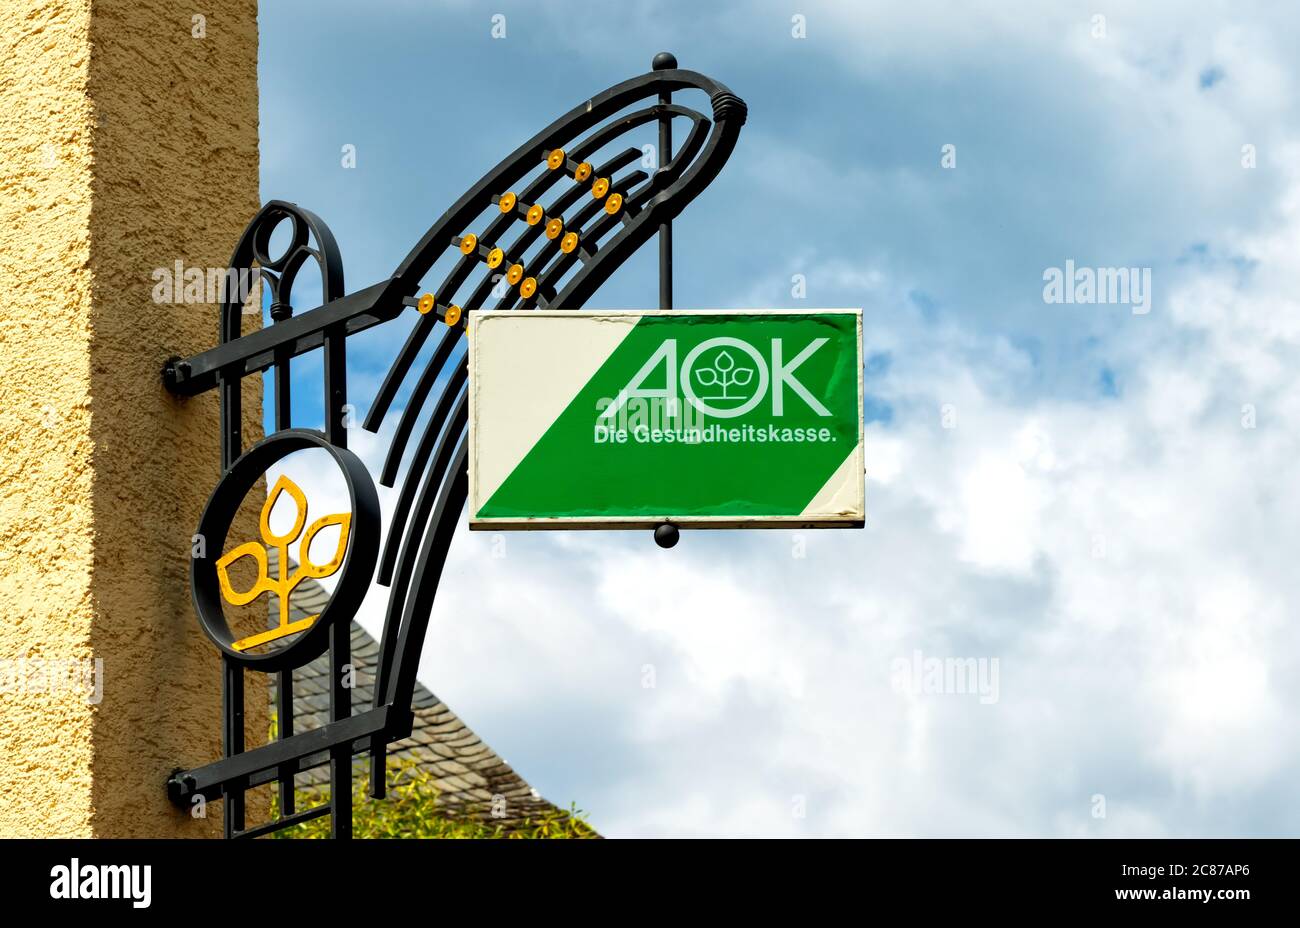 Linz, Deutschland, 07/12/2020: AOK-Schild an einer schönen Fassade in Linz, Deutschland Stockfoto